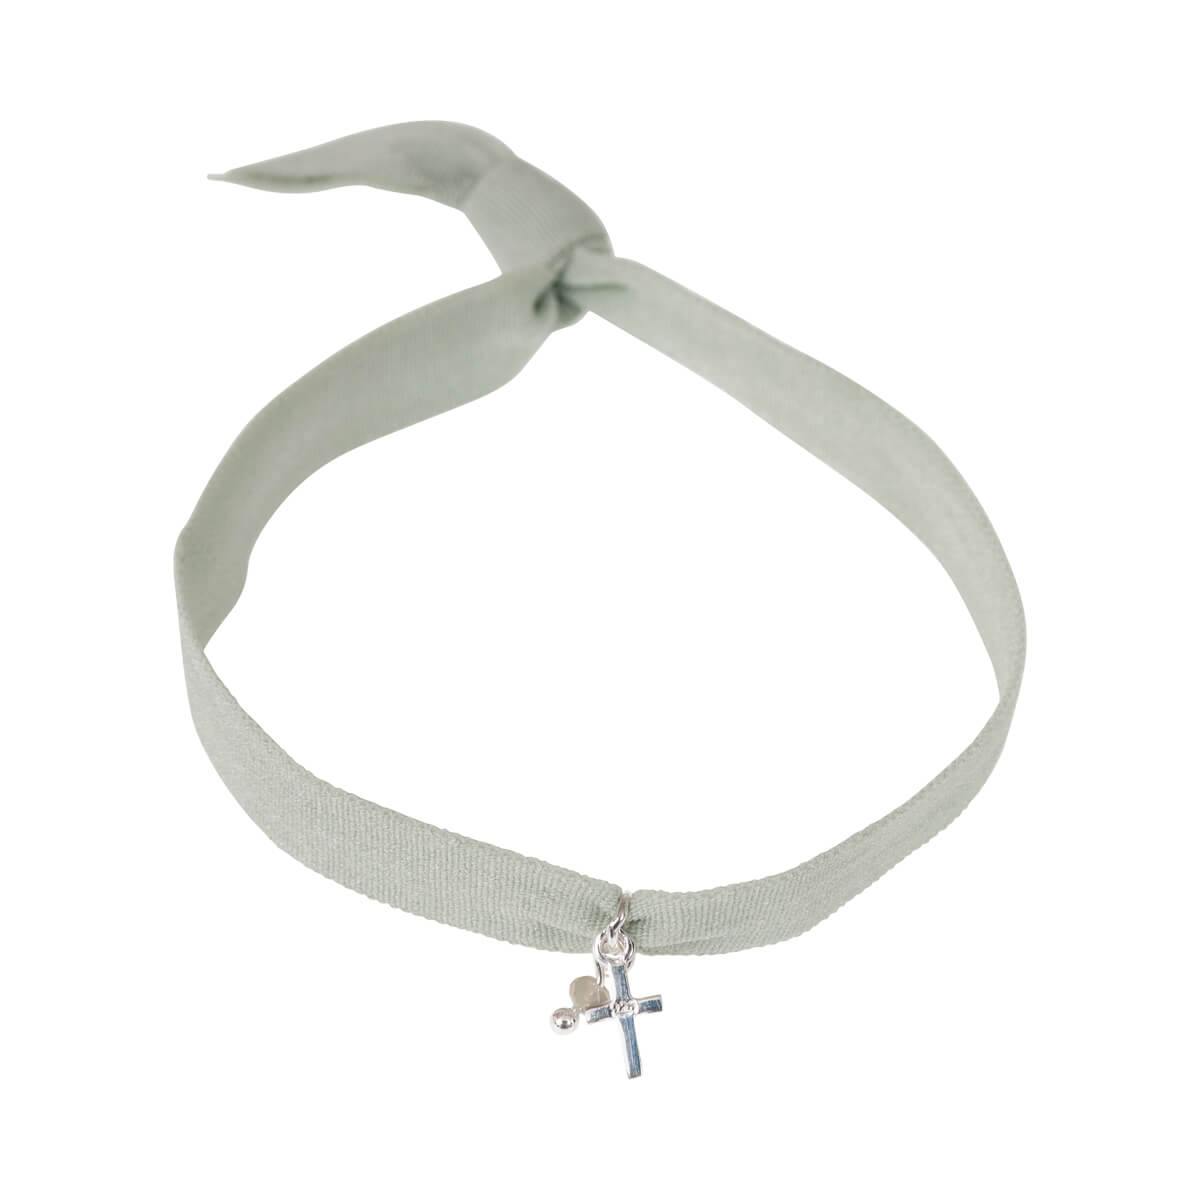 Textil-Armband Kreuz mit Perle